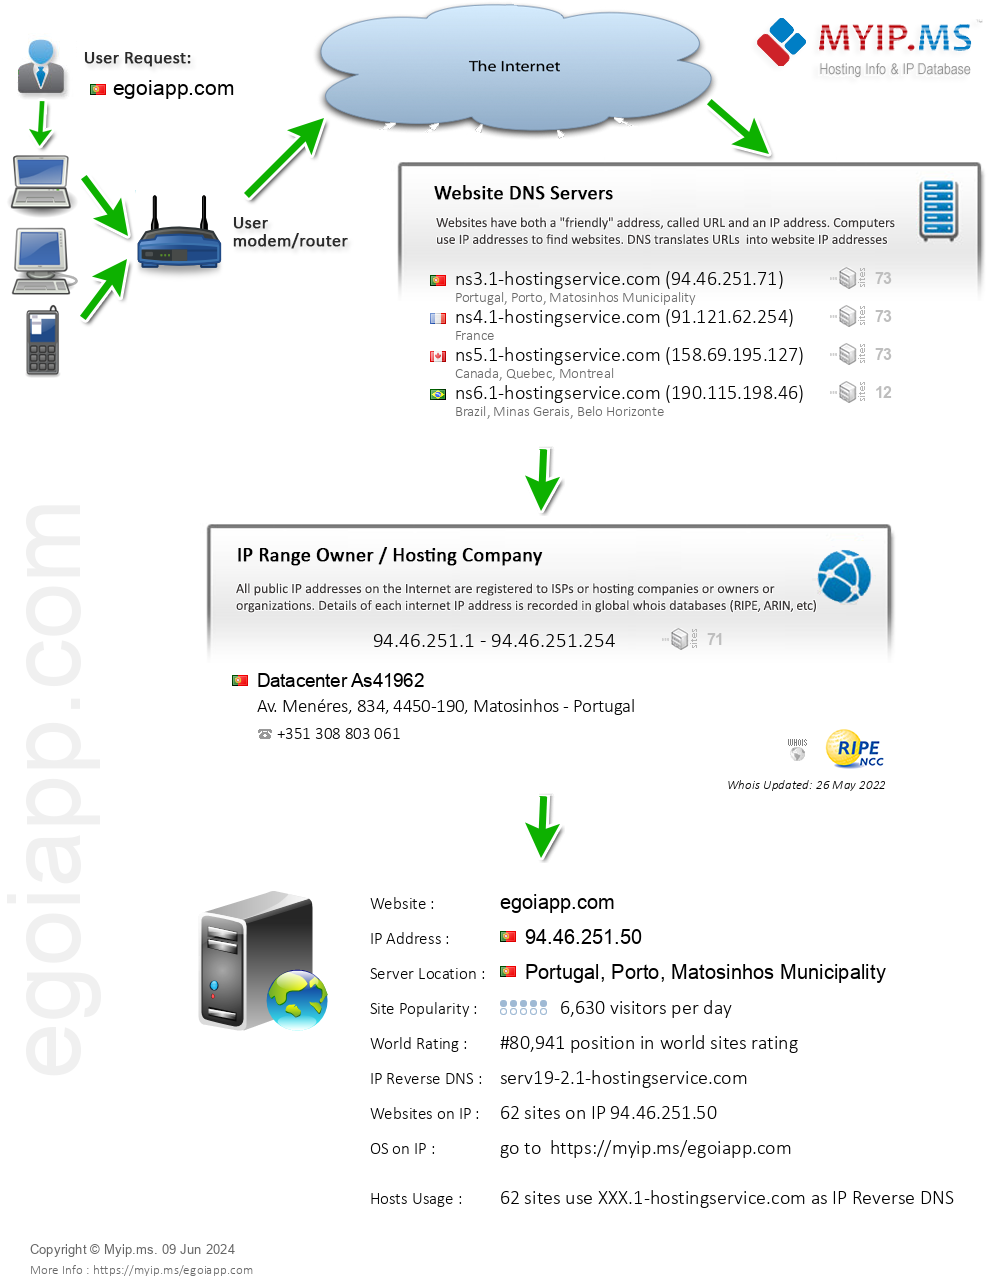 Egoiapp.com - Website Hosting Visual IP Diagram